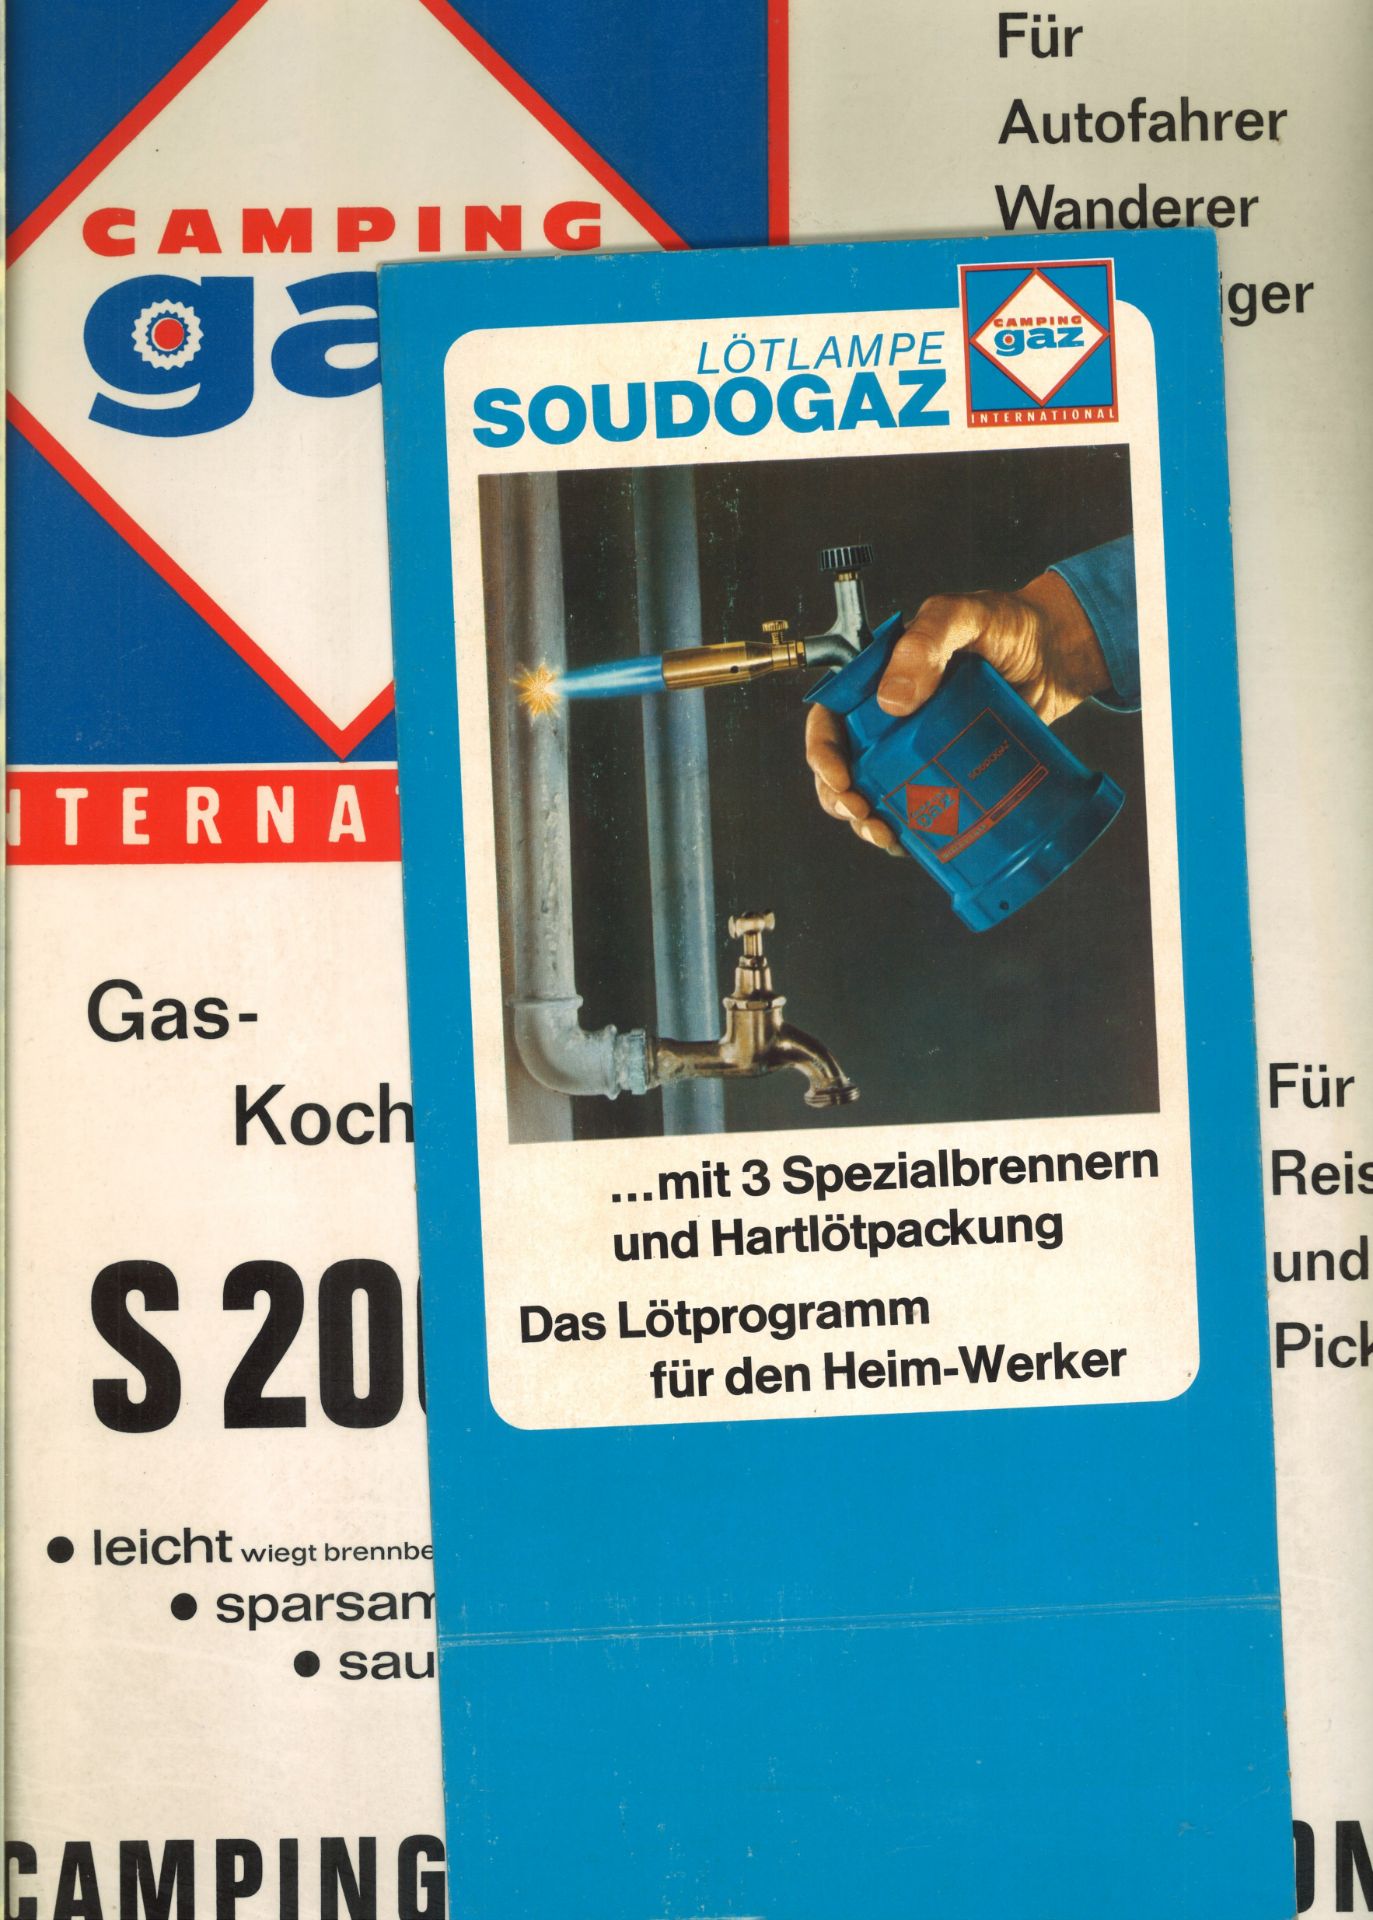 Werbeplakat und Papp - Aufsteller "Camping gaz" International, Gas-Kocher S 200 und Lötlampe,